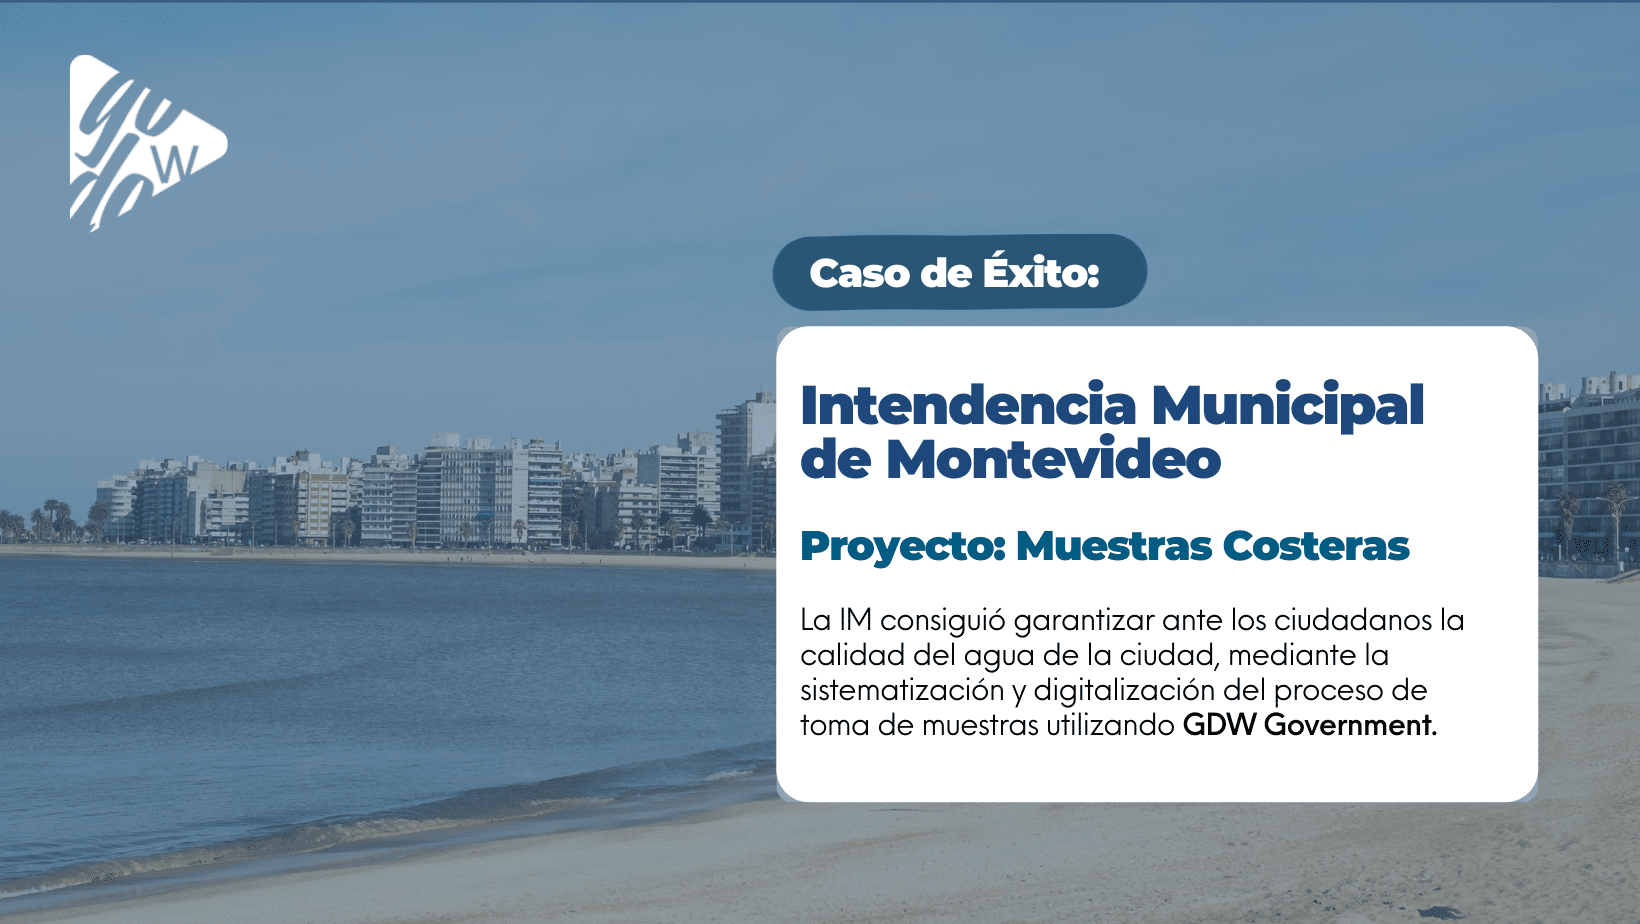 En este momento estás viendo Proyecto Muestras Costeras de Intendencia Municipal de Montevideo